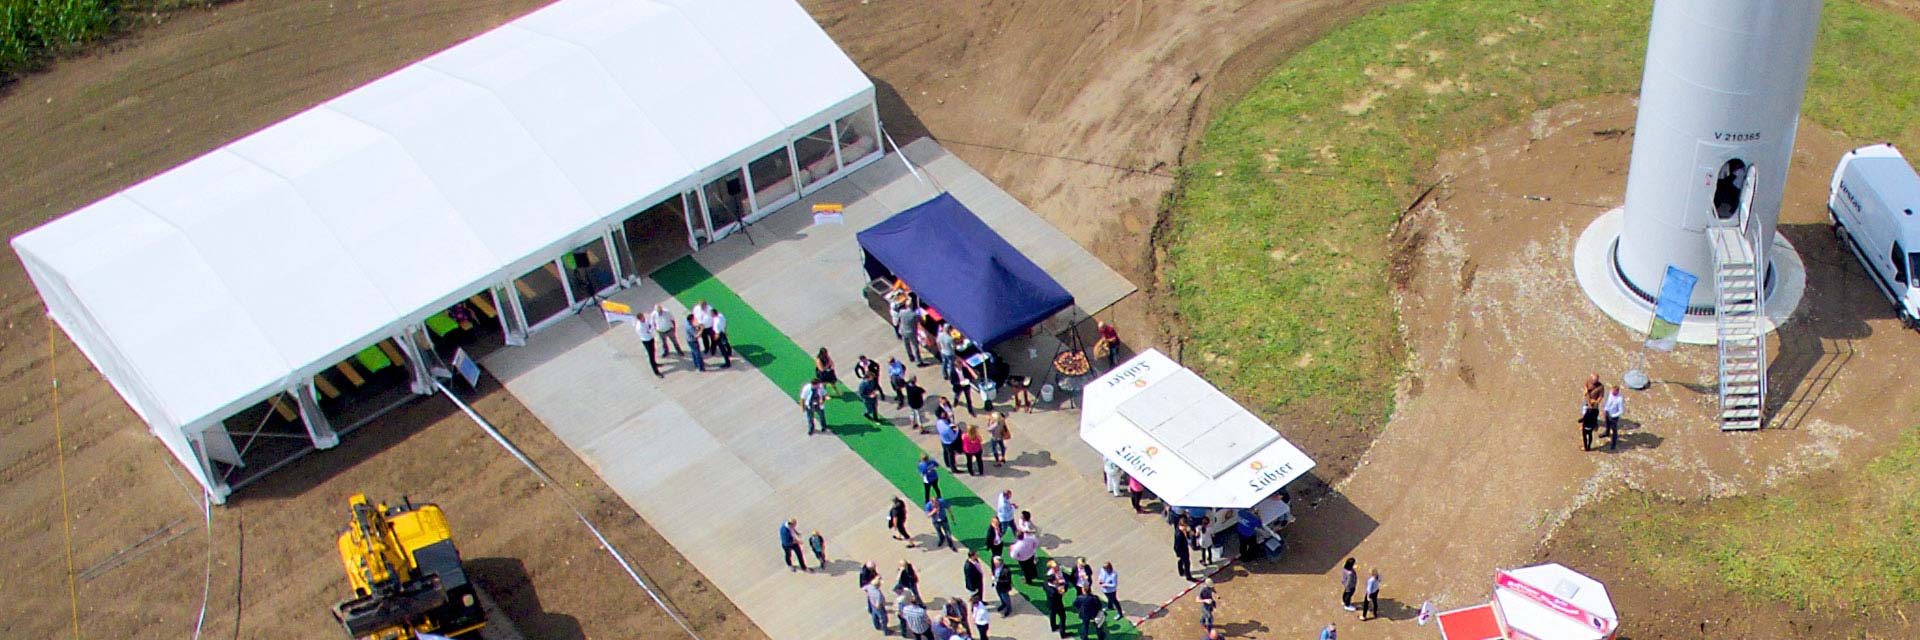 Zu sehen ist ein Luftbild mit Blick auf den Fuß einer Windenergieanlage mit einem Festzelt, Menschen und Imbissständen.